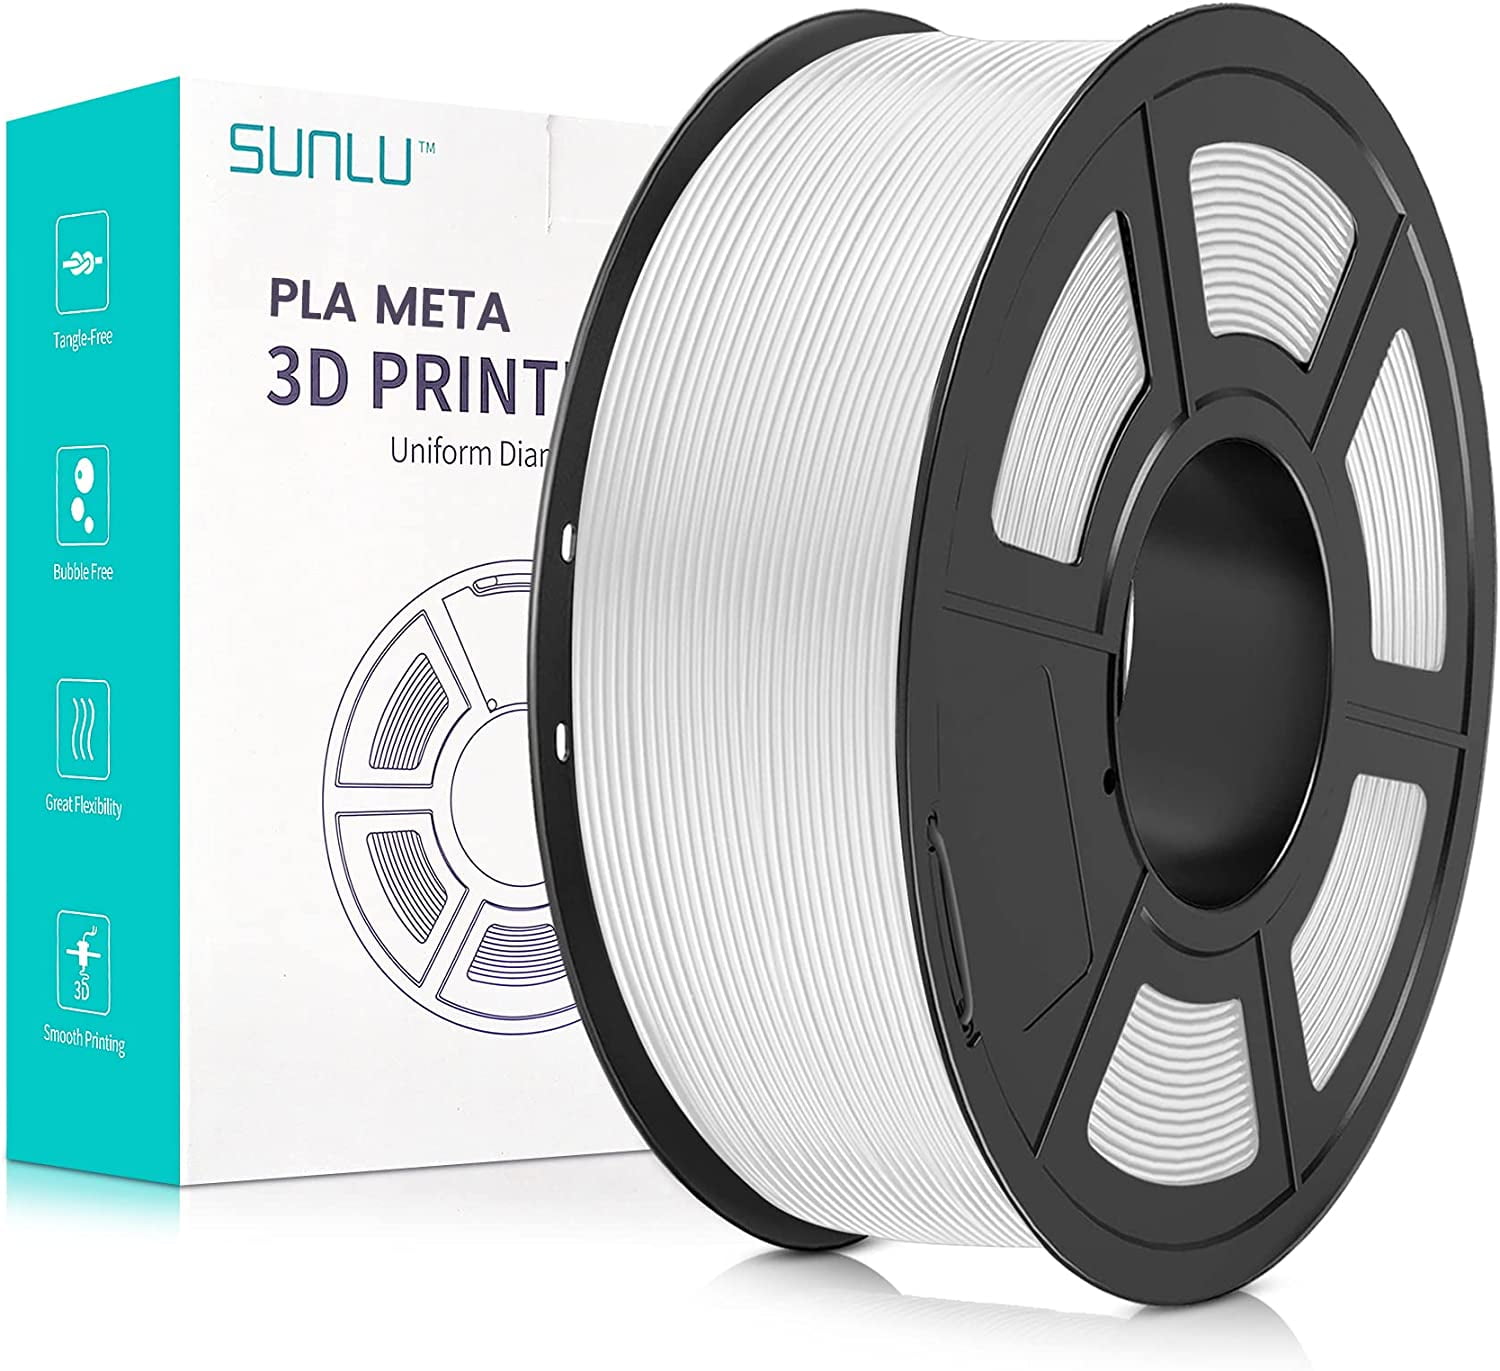 Sunlu PLA+ / PETG Filament Review - 3D Printer PLA Plus - JAYO